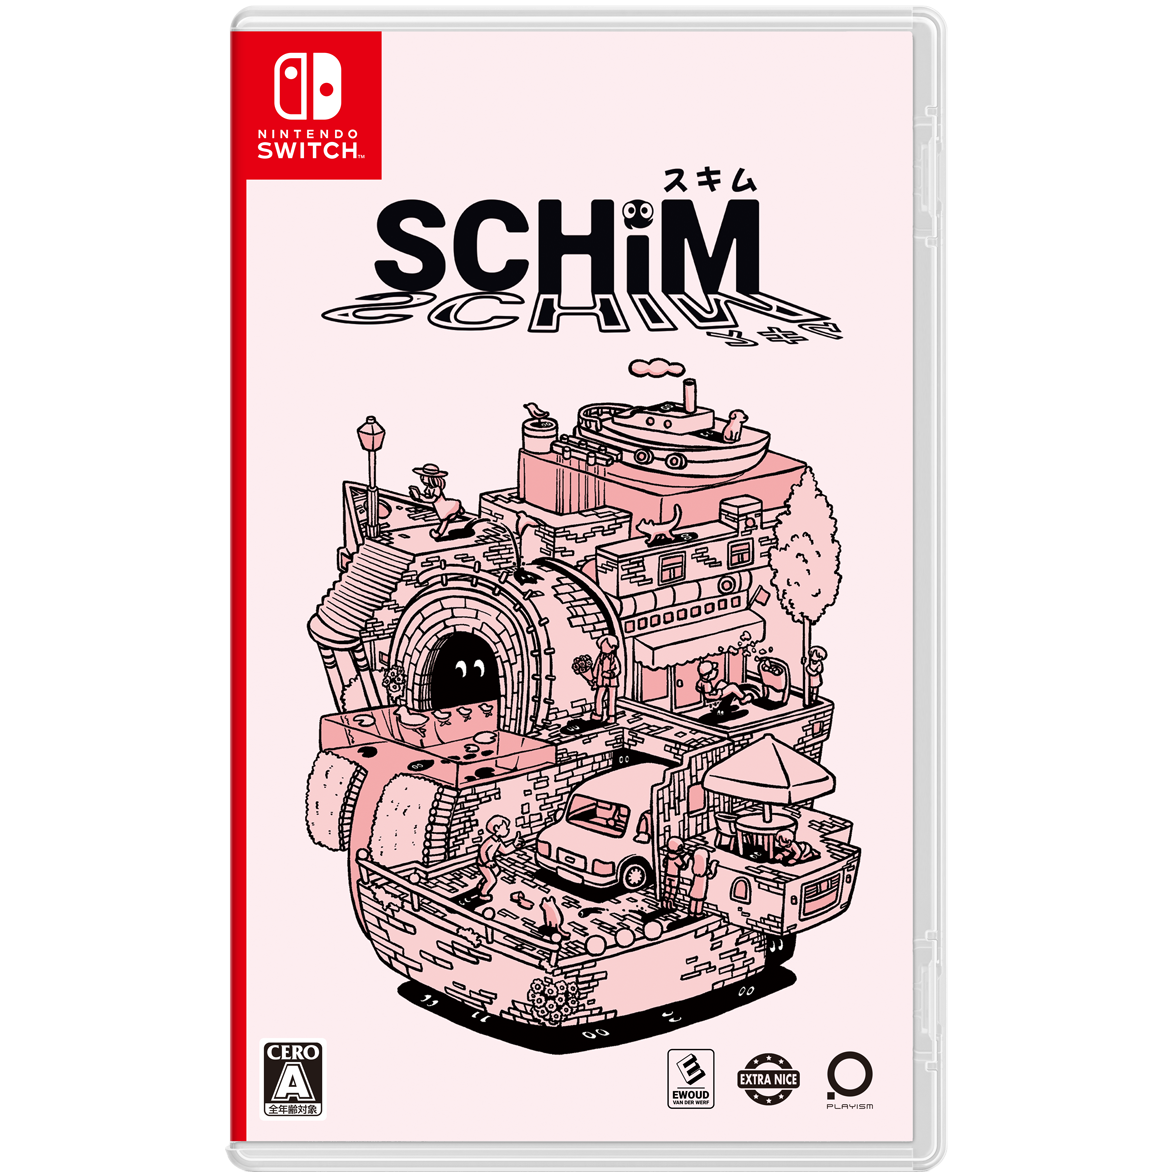 【予約】SCHiM - スキム - [Switch] 初回特典/オリジナル特典「ピンバッジ2種セット」付き(数量限定)(日本版)